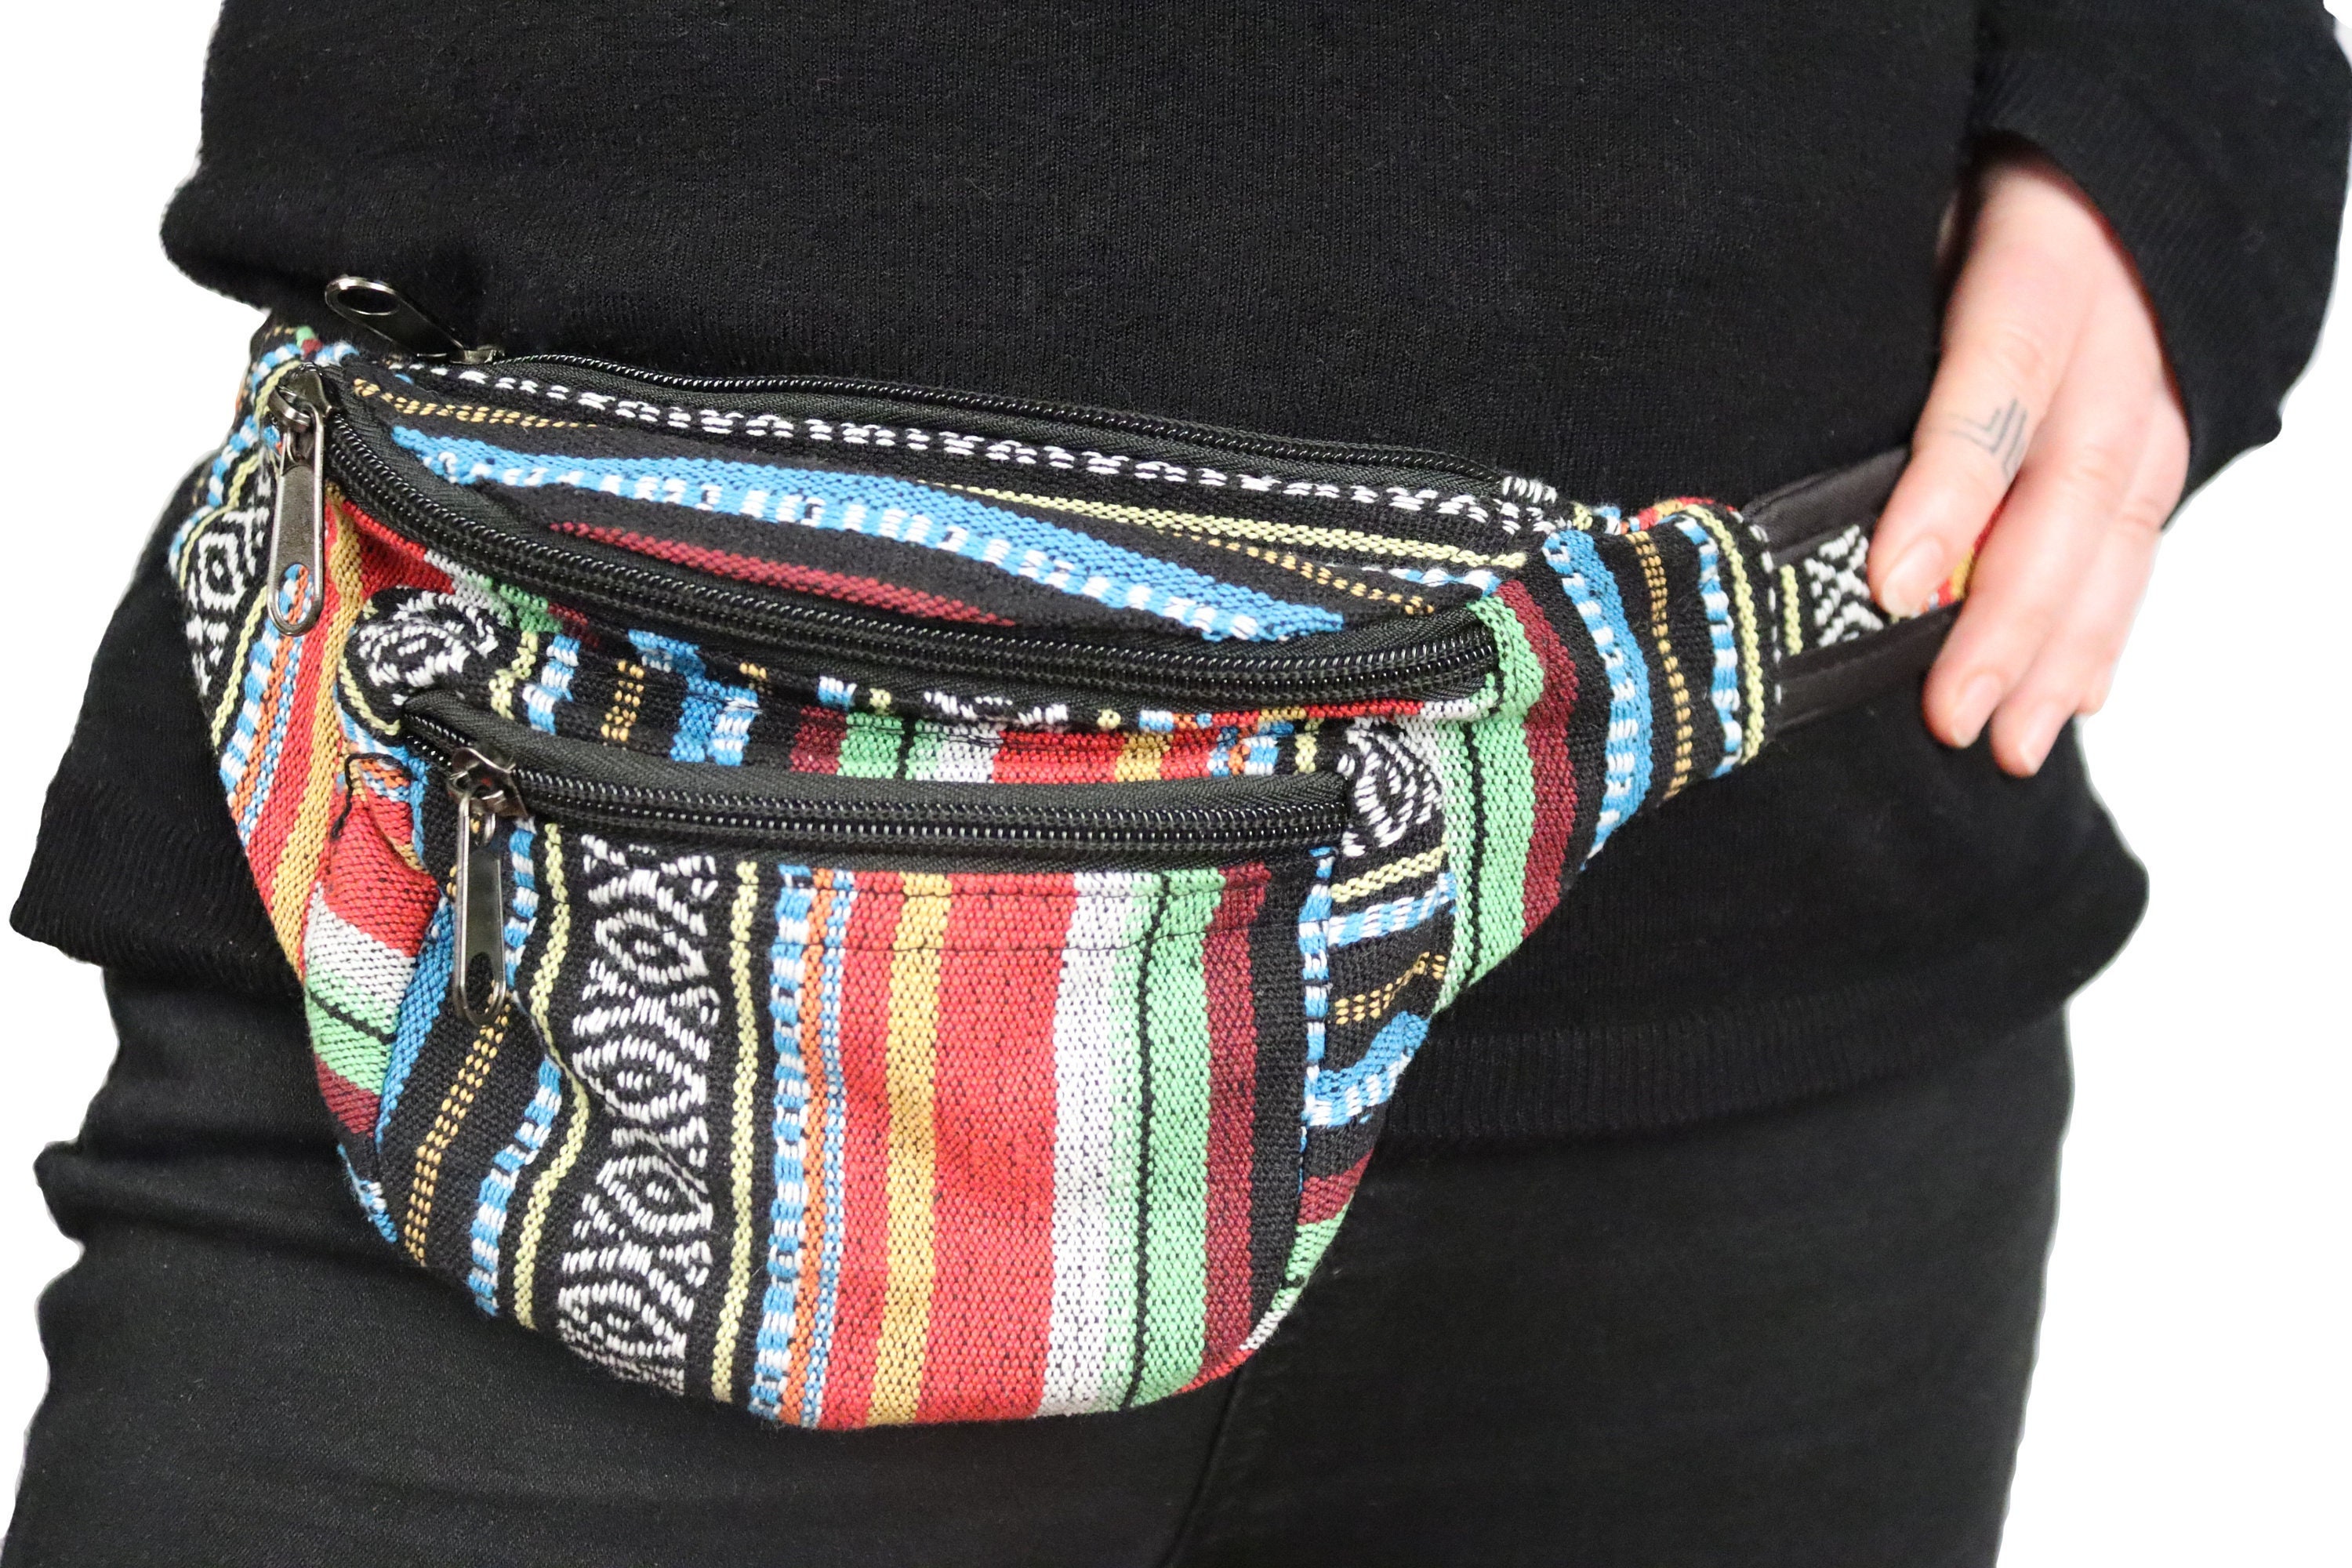 Borse e borsette Marsupi e borsette da cintura Borsa in stile hippie con cinturino regolabile 3 tasche vegan friendly realizzata con fibre di canapa 